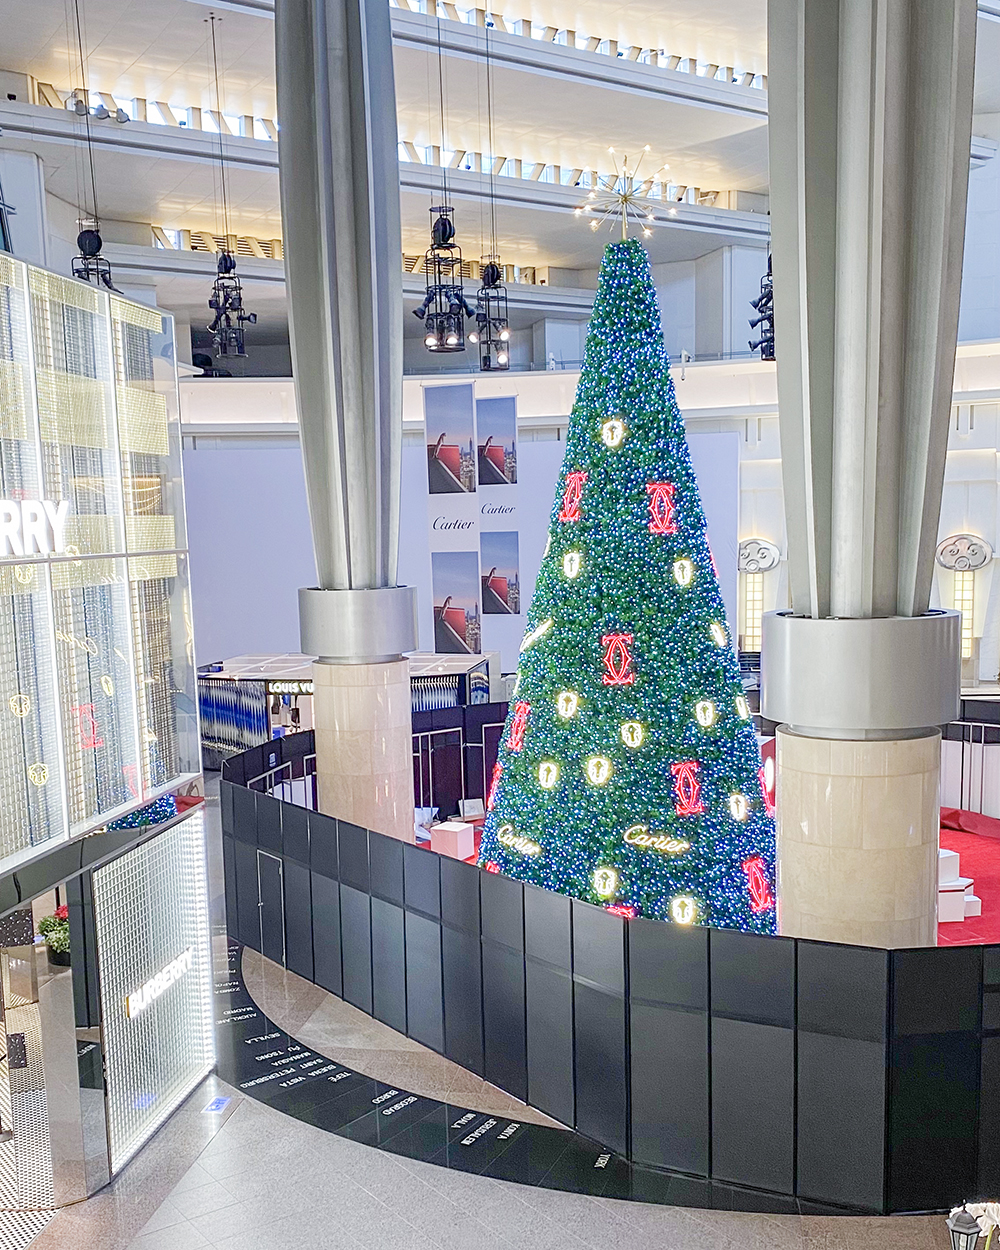 台北 101「雙跨年活動」共呈現出 101 顆聖誕樹！而這顆由 Cartier 設計高達 12 公尺高的巨型聖誕樹絕對是拍攝重點